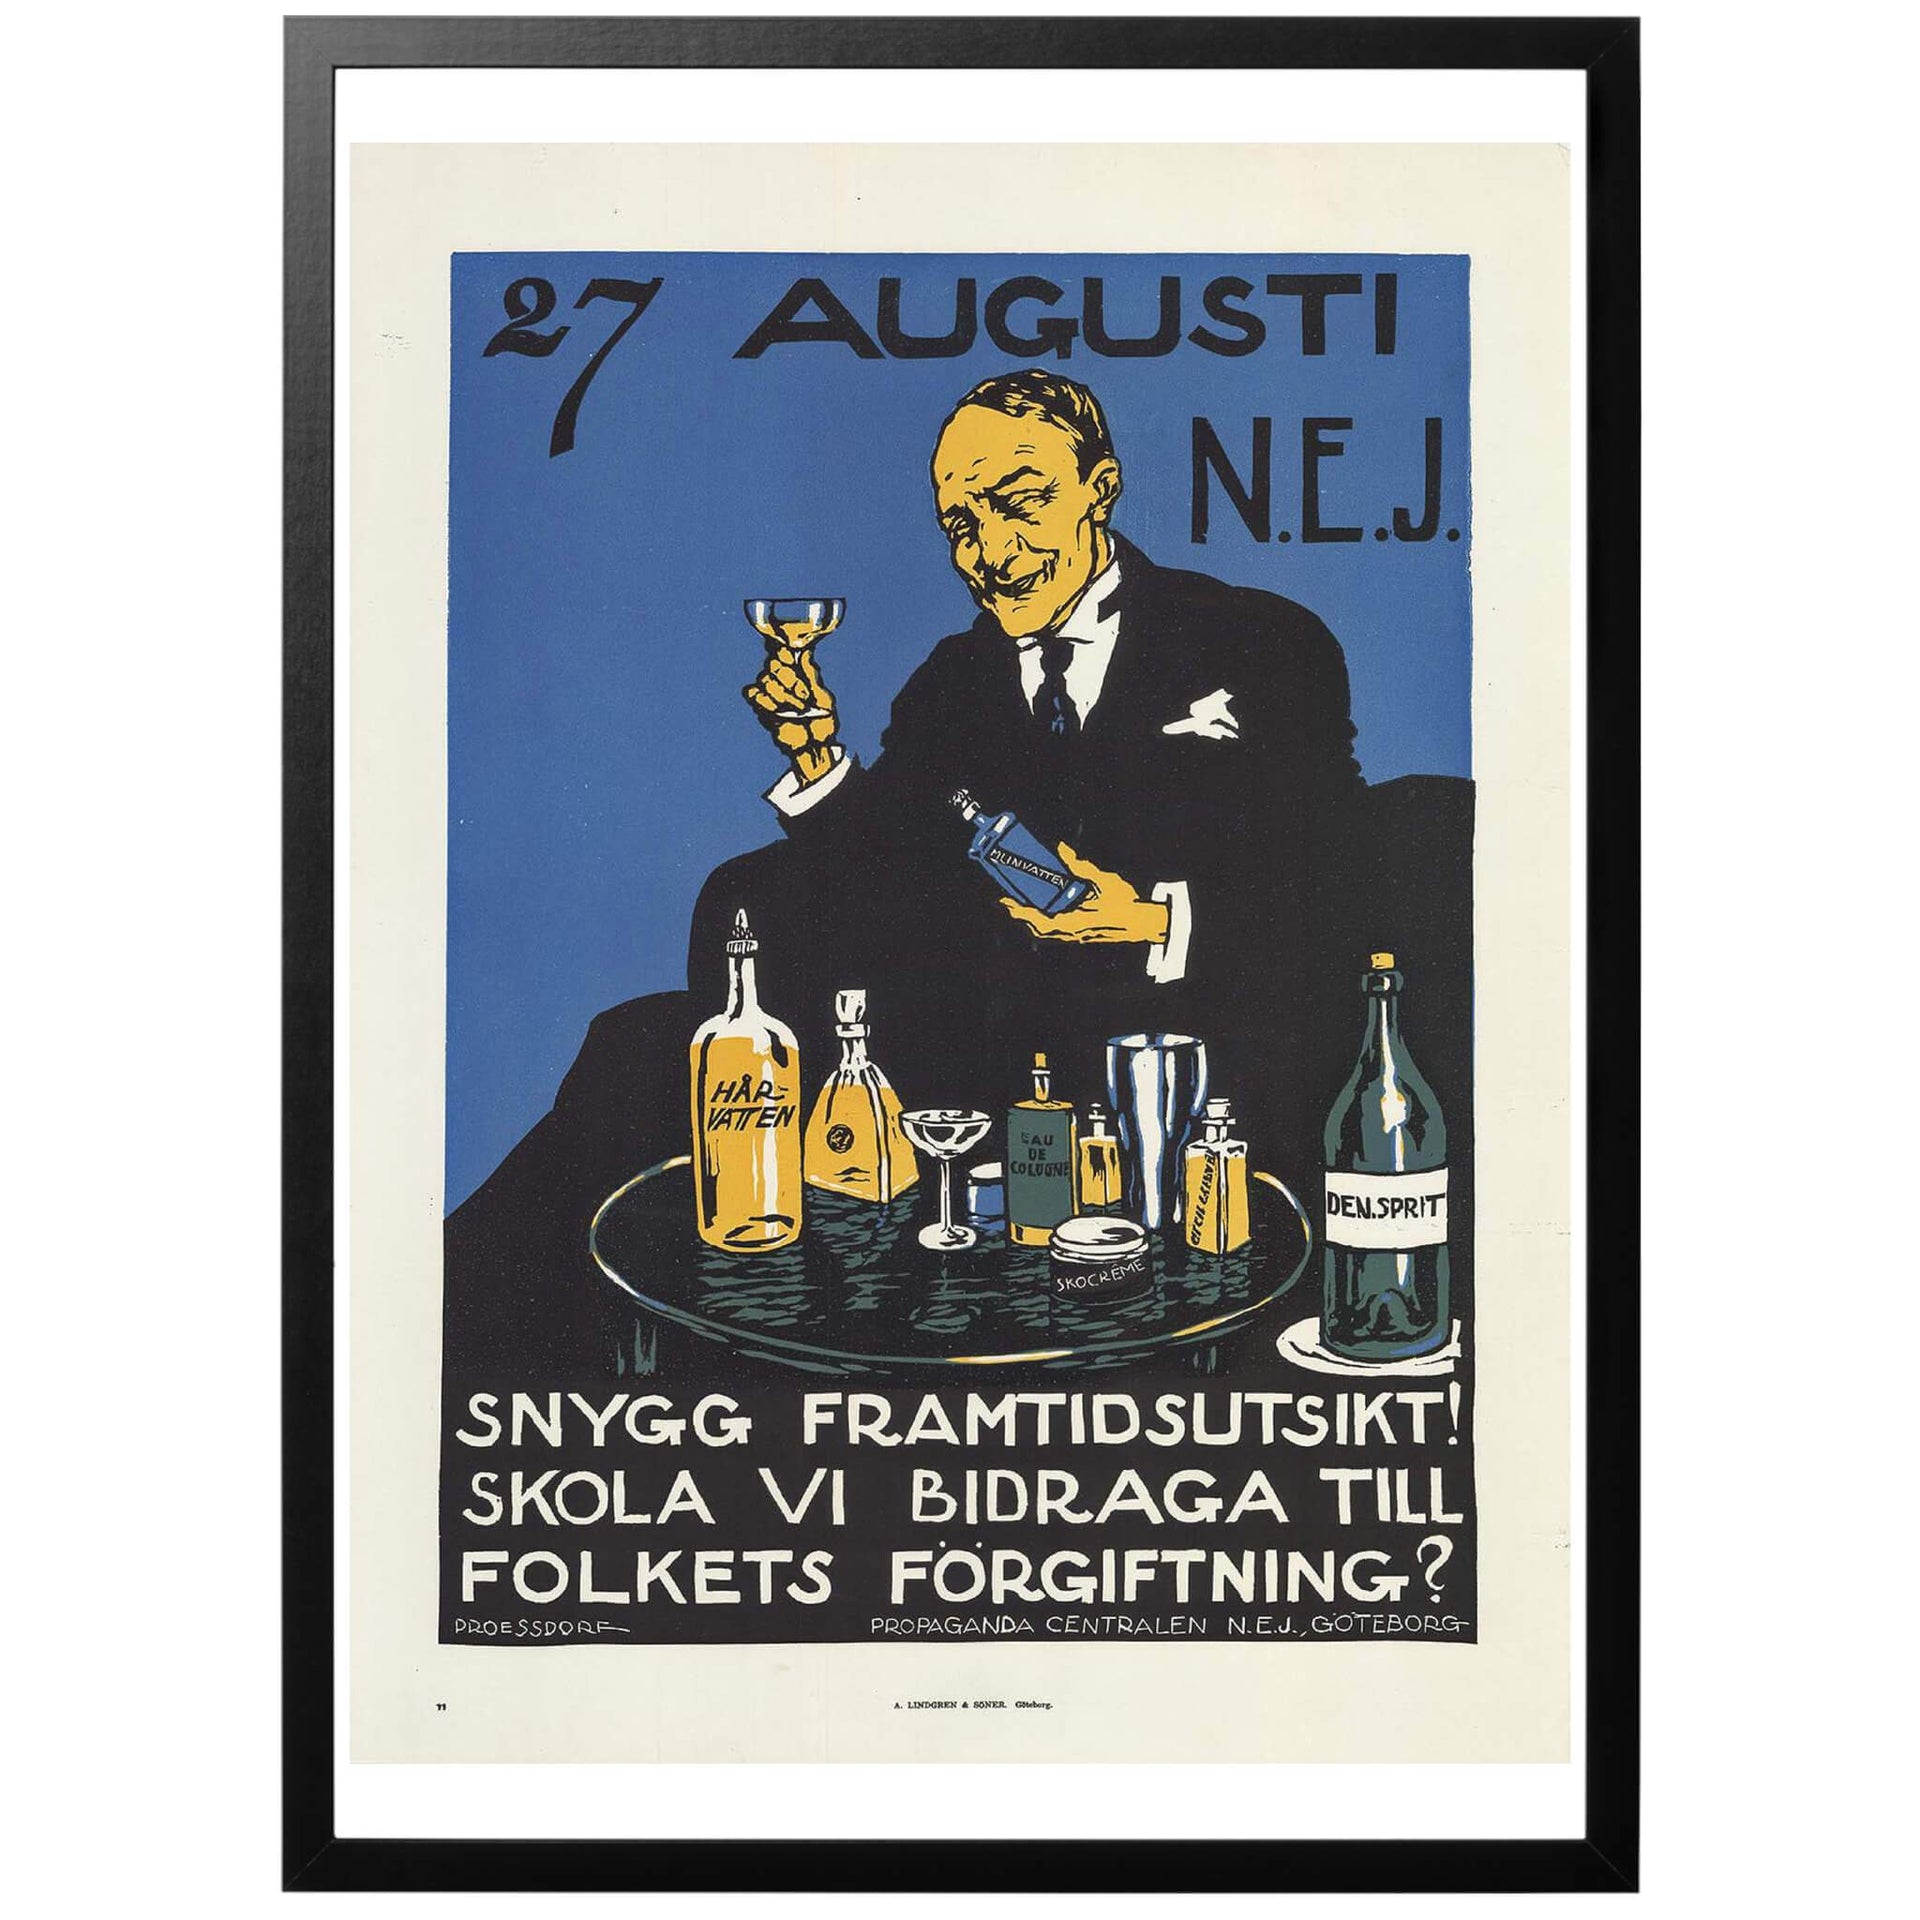 27 augusti - NEJ. Svensk affisch från 1922 och folkomröstningen om rusdrycksförbud föreställande en äldre herre som skålar med hårvatten.